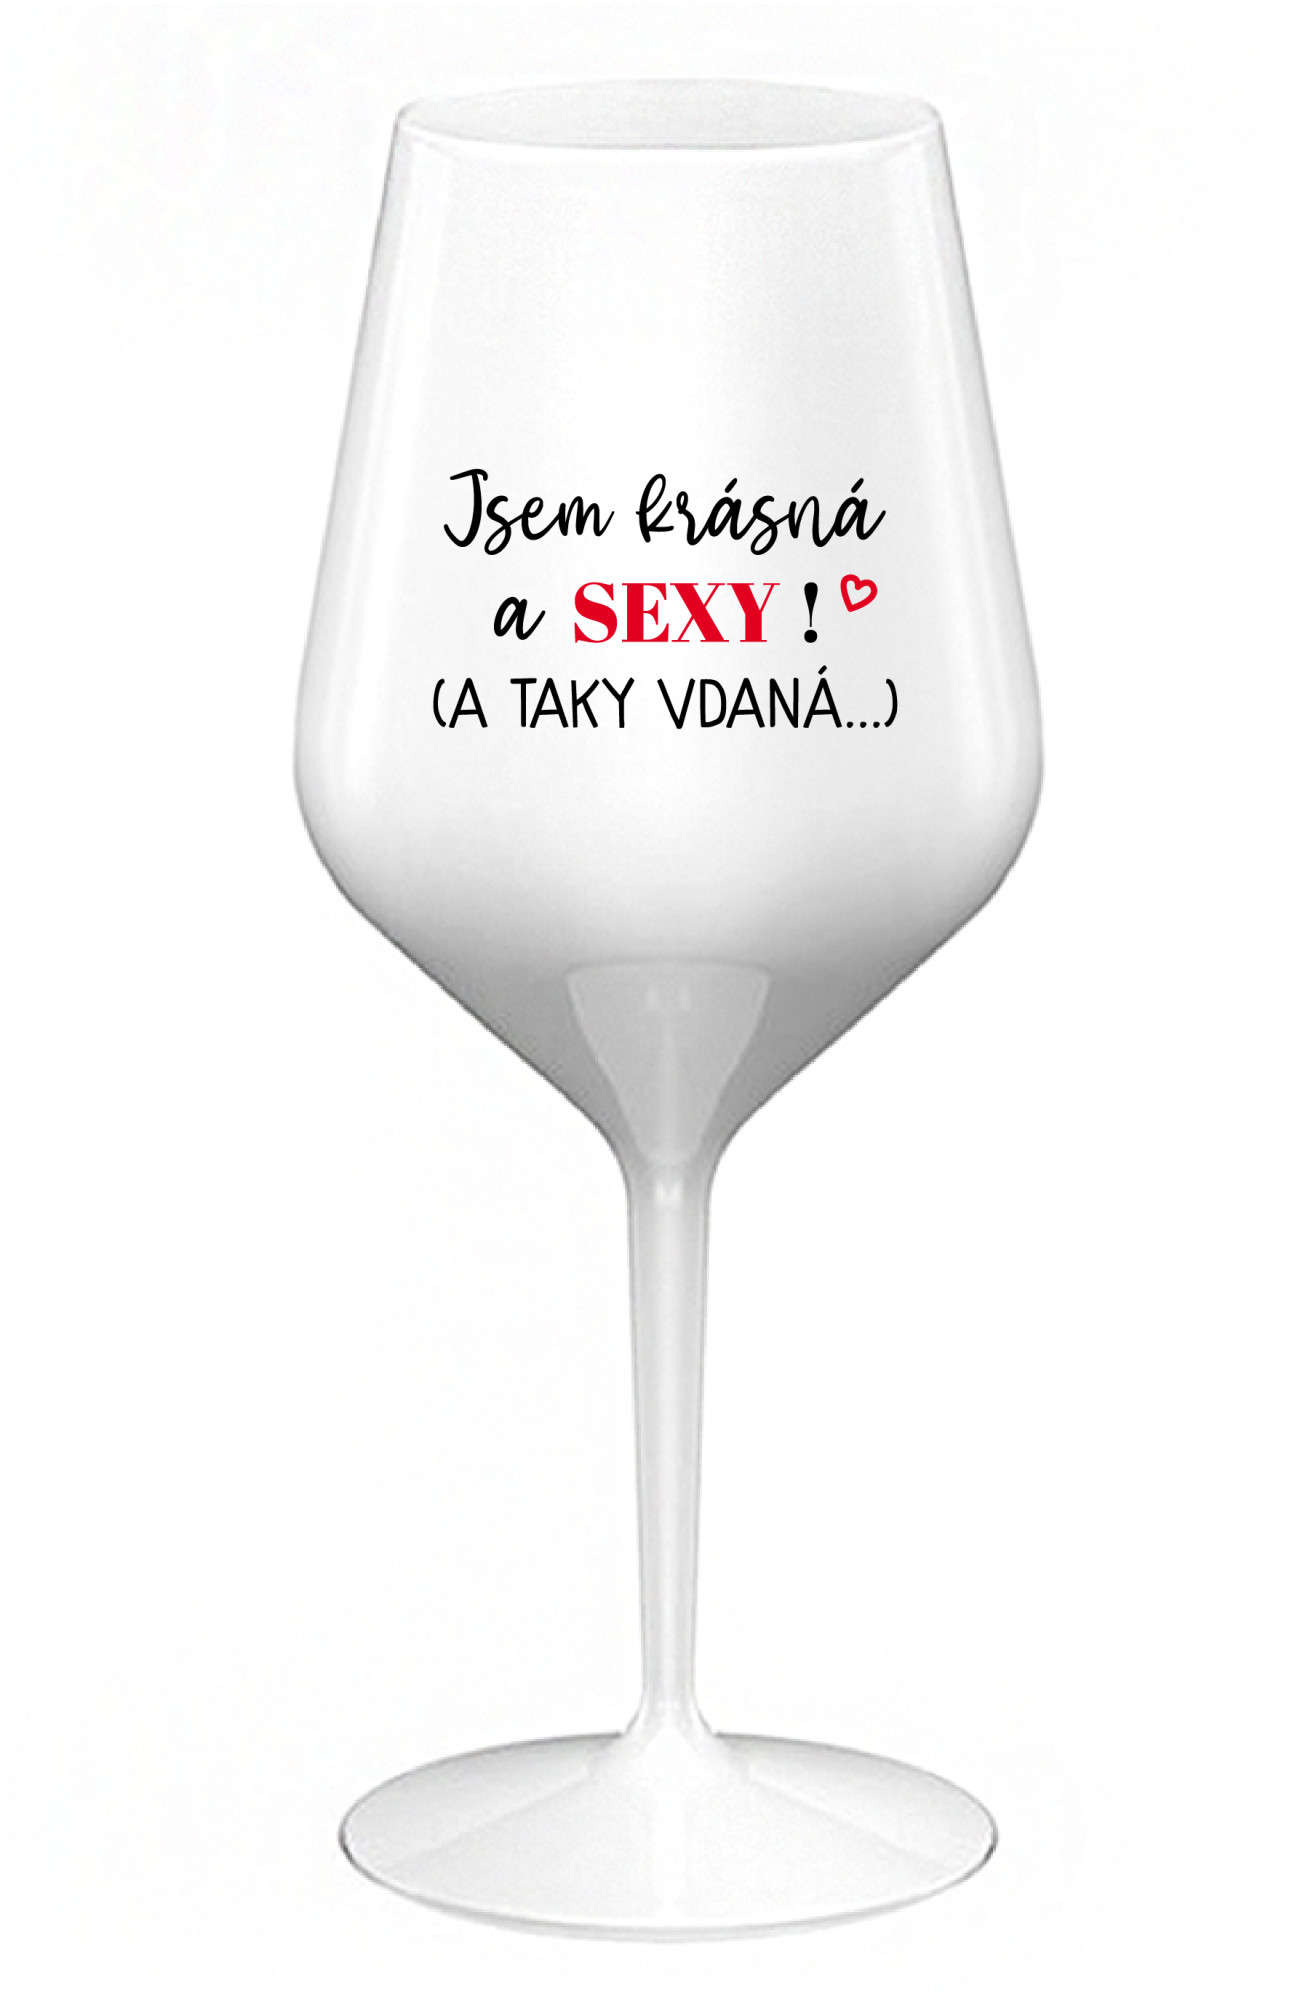 JSEM KRÁSNÁ A SEXY! (A TAKY VDANÁ...) - bílá nerozbitná sklenice na víno 470 ml uni